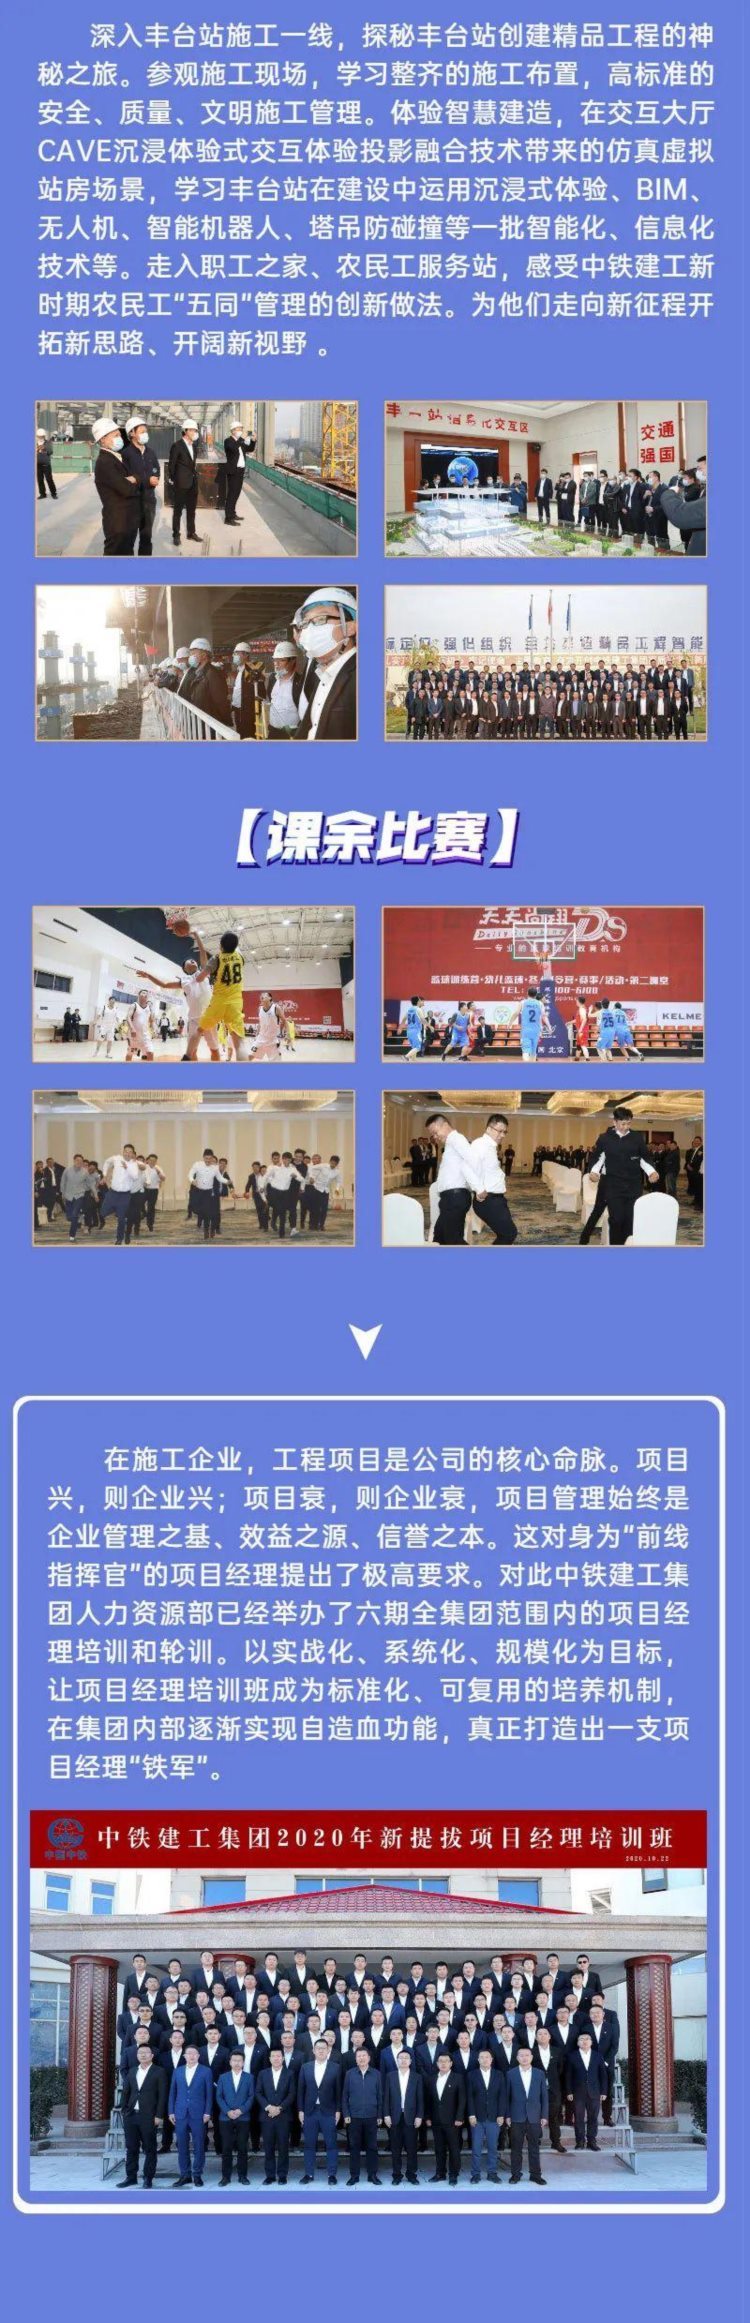 中铁建工集团举办2020年新提拔项目经理培训班